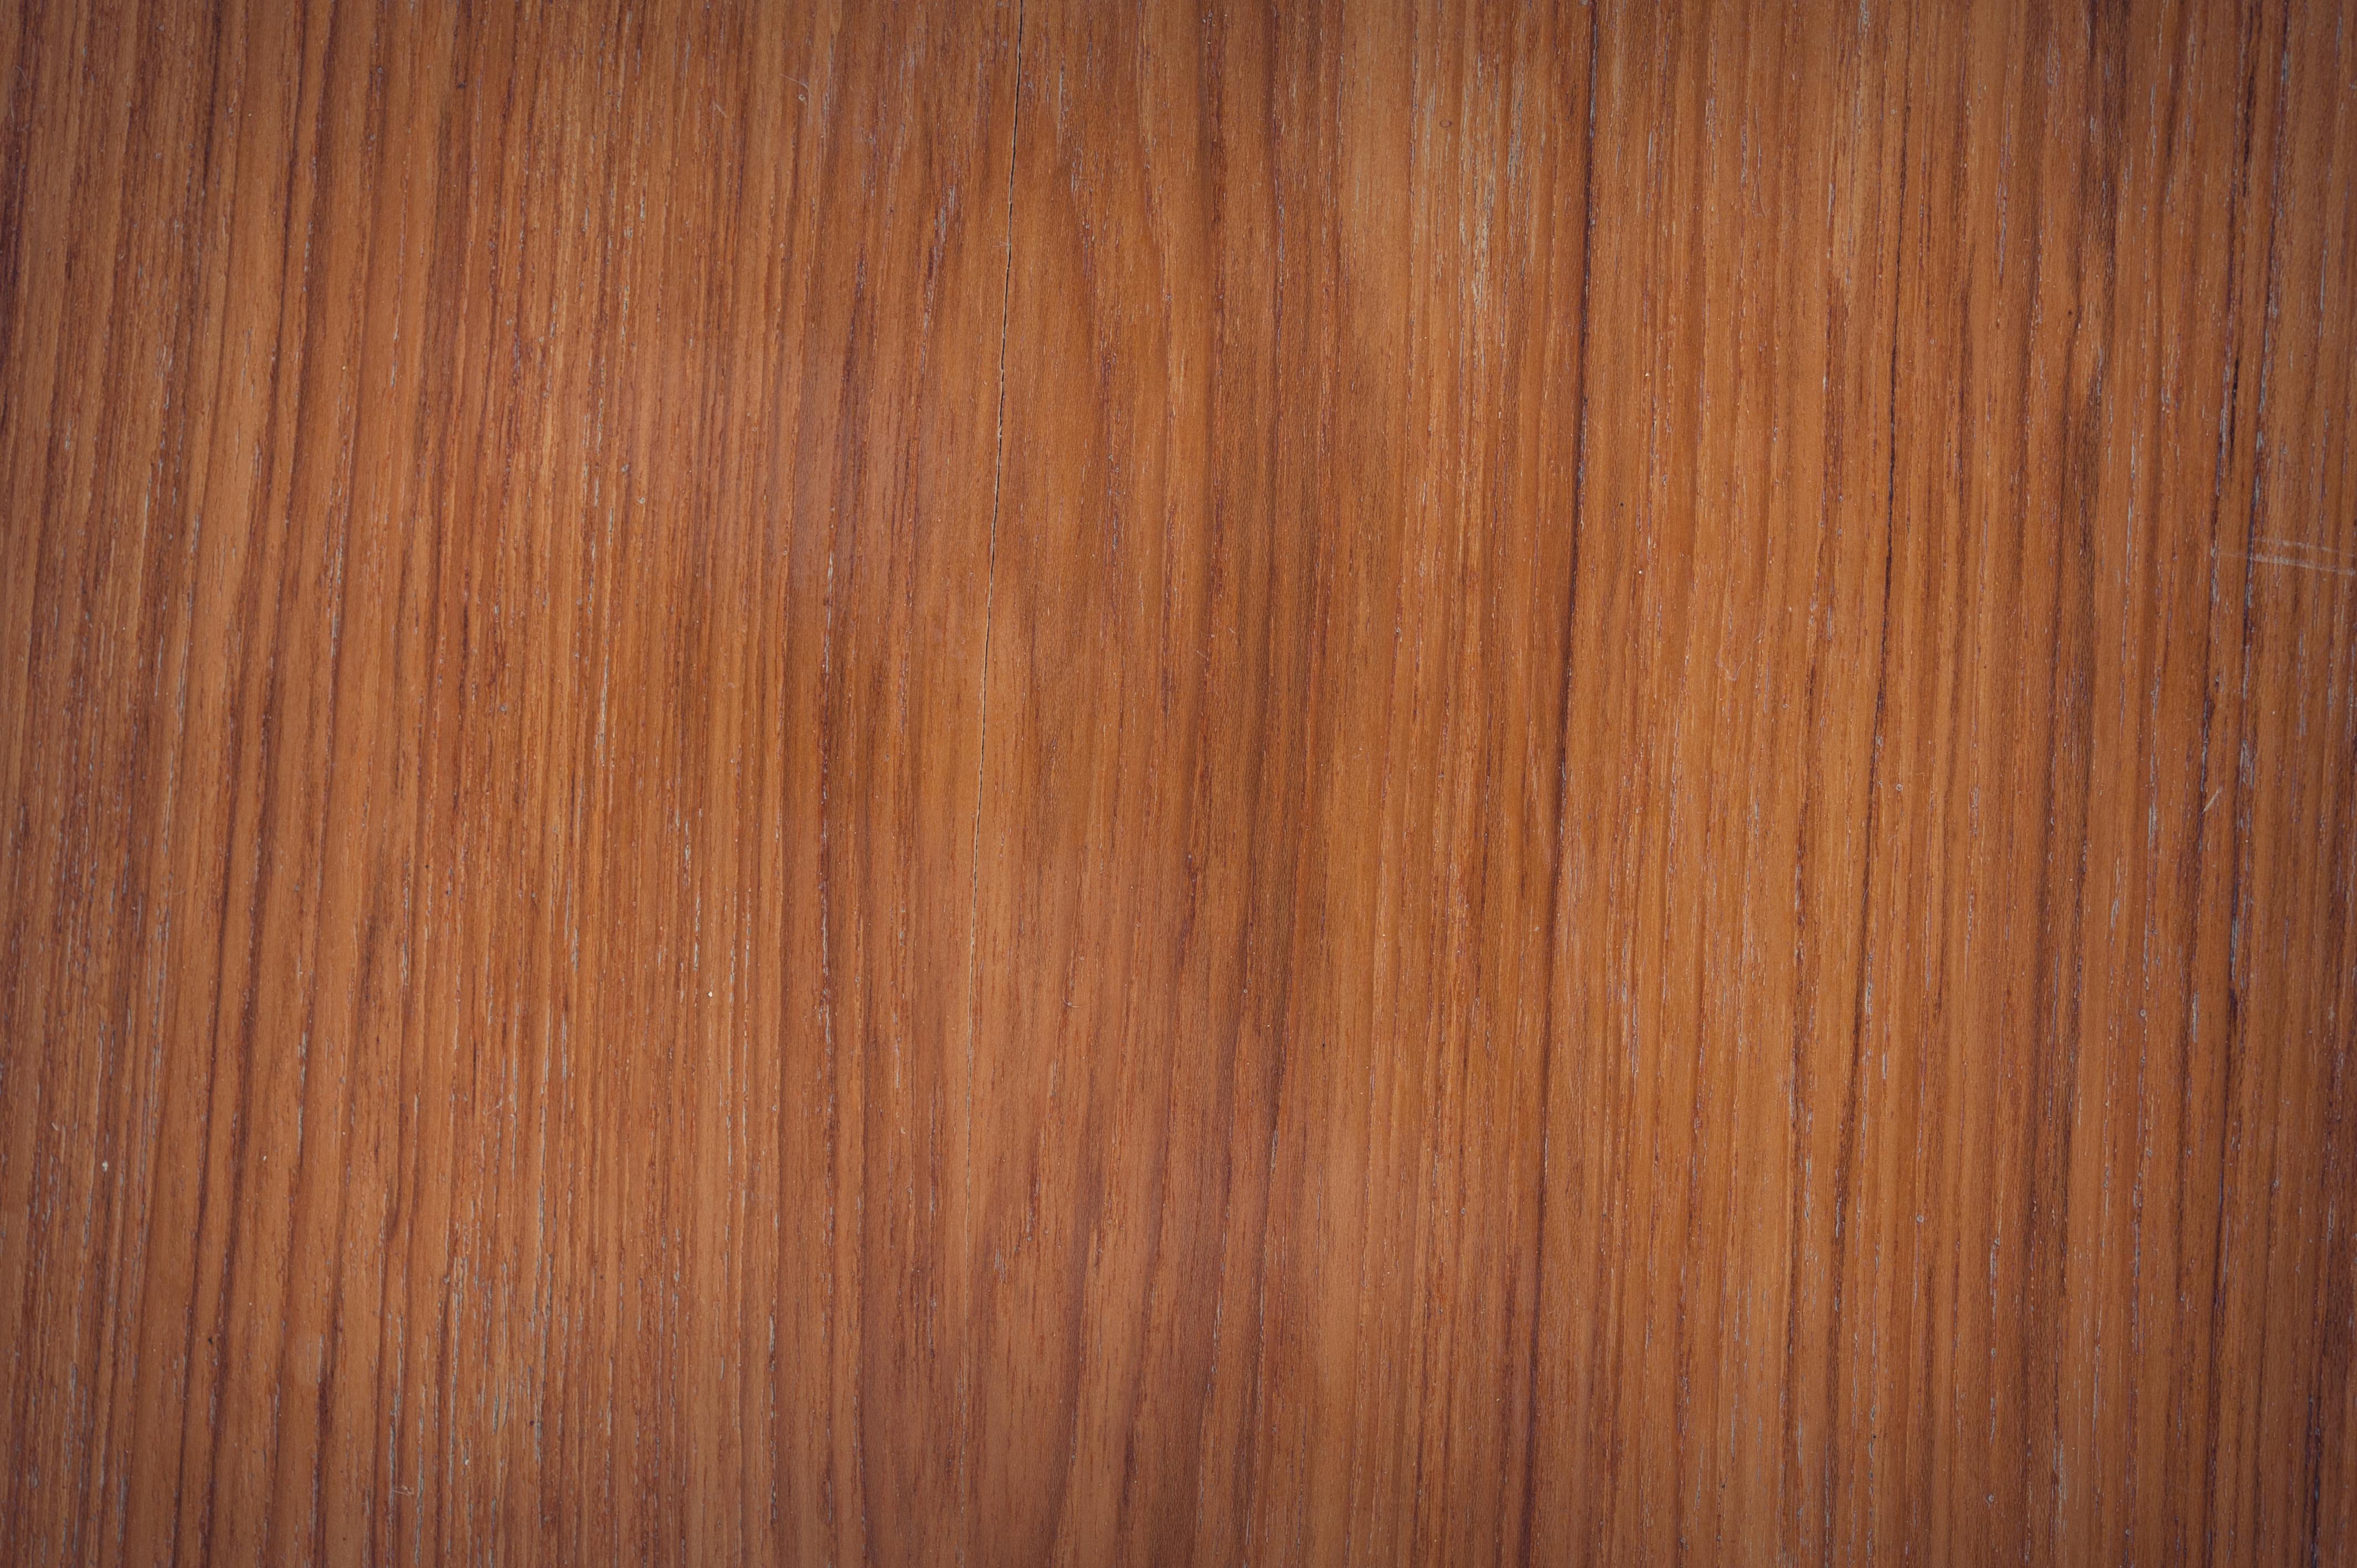 Ảnh vân gỗ: Hình ảnh các chi tiết vân gỗ cực kỳ sắc nét và sống động sẽ làm cho bạn nhận ra sự phong phú cùng sự đa dạng của vật liệu này. Cùng ngắm nhìn các hình ảnh vân gỗ tuyệt đẹp, từ những chi tiết nhỏ nhặt cho tới các đường nét sắc sảo.